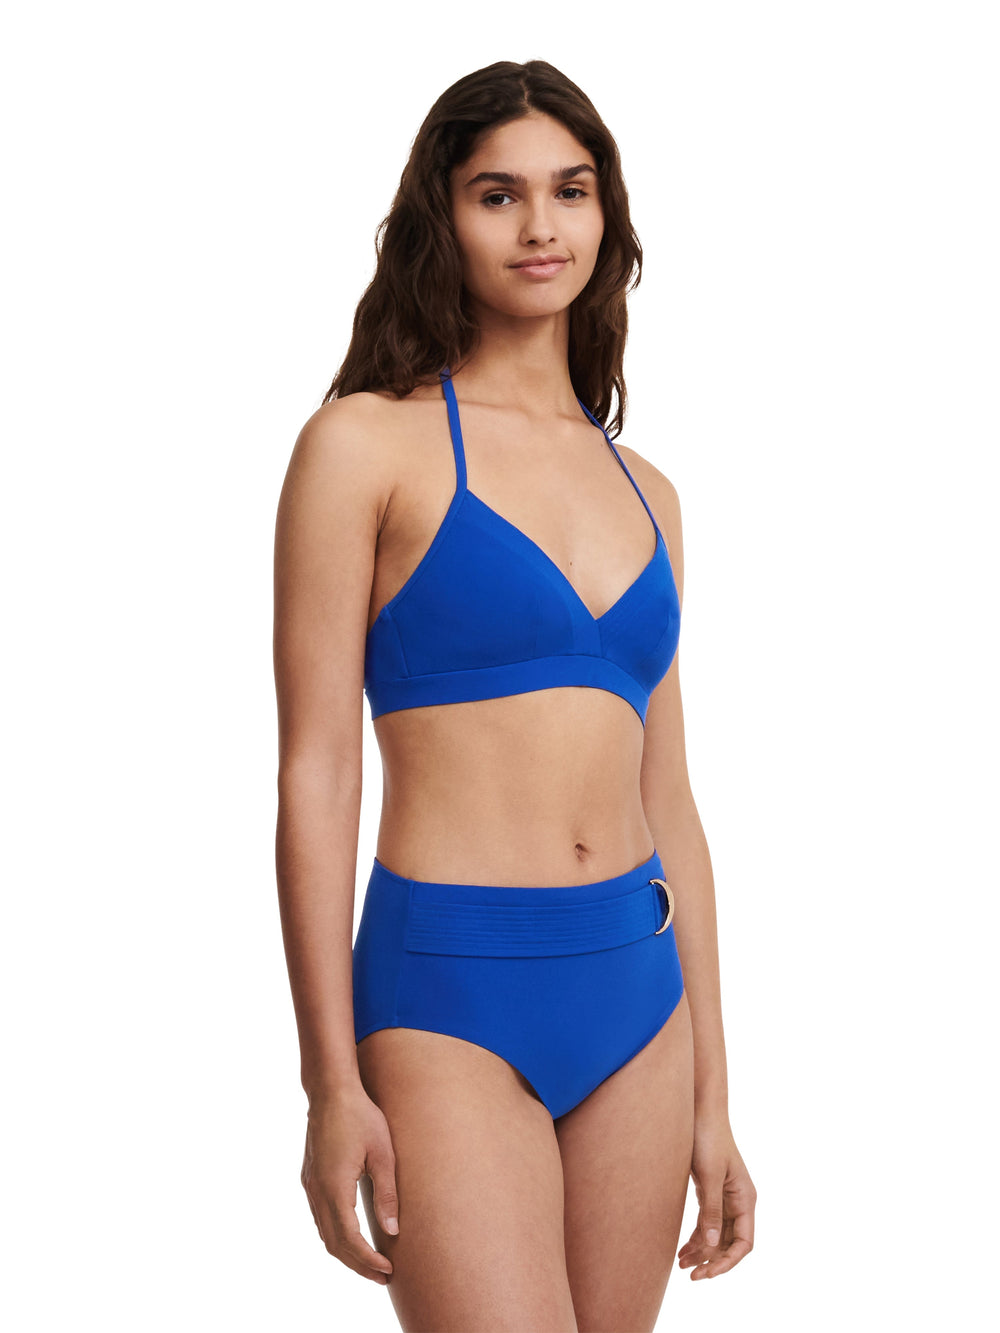 Chantelle Swimwear - Celestial Wirefree Triangle Foam Bikini Deep Blue Triangle Bikini Chantelle Swimwear 